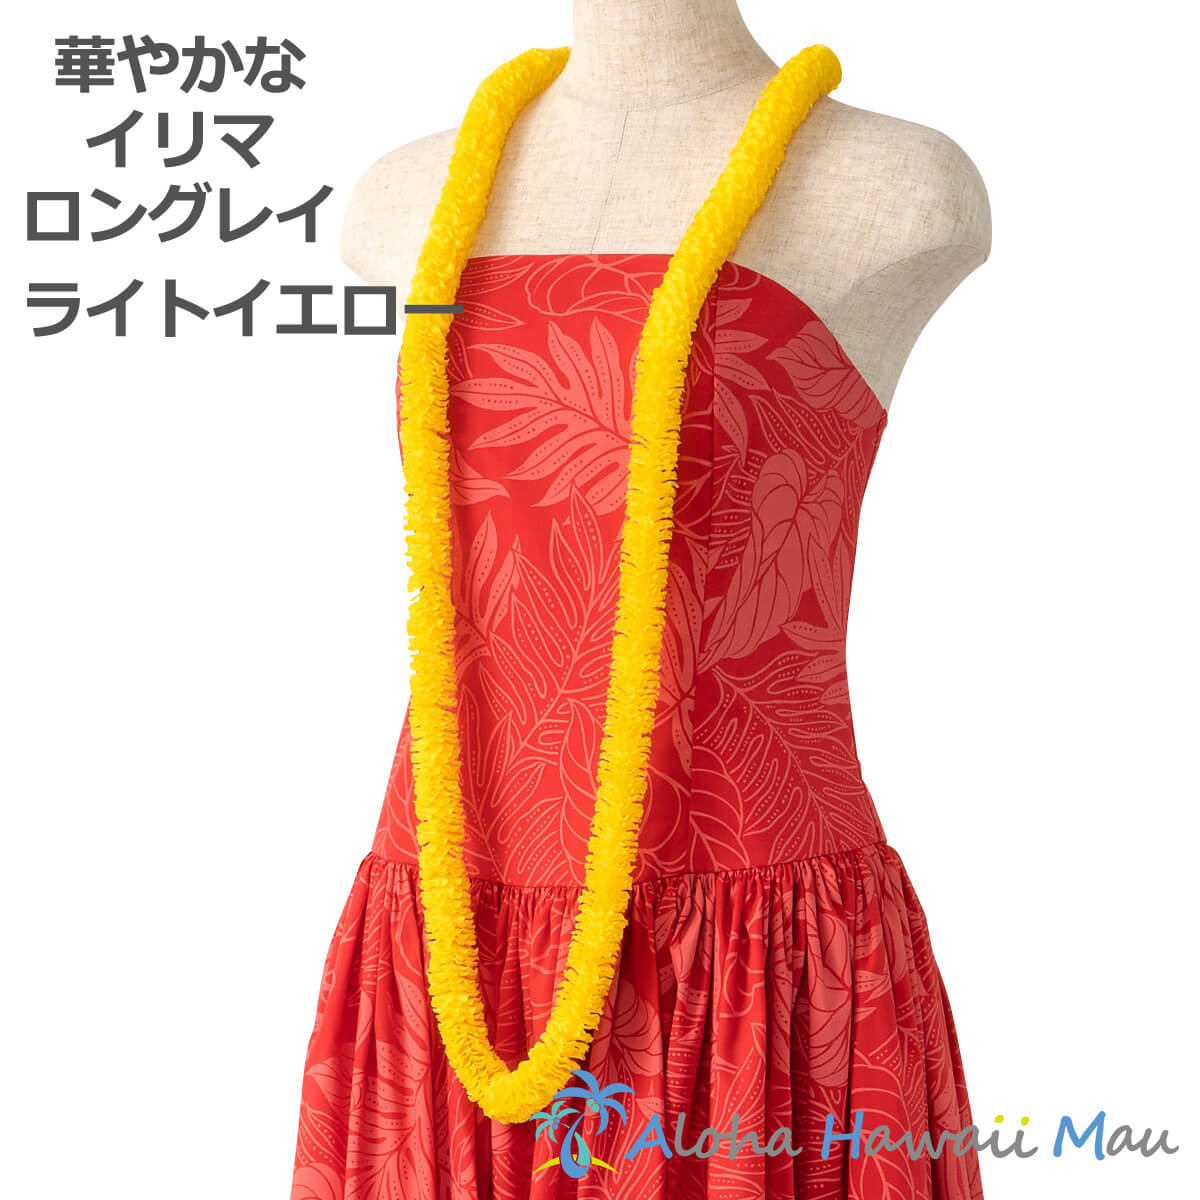 フラダンス レイ 黄色 イリマロングレイ ライトイエロー ハワイ フラ ハワイアンレイ フラダンス小物 花の首飾り フラダンス衣装